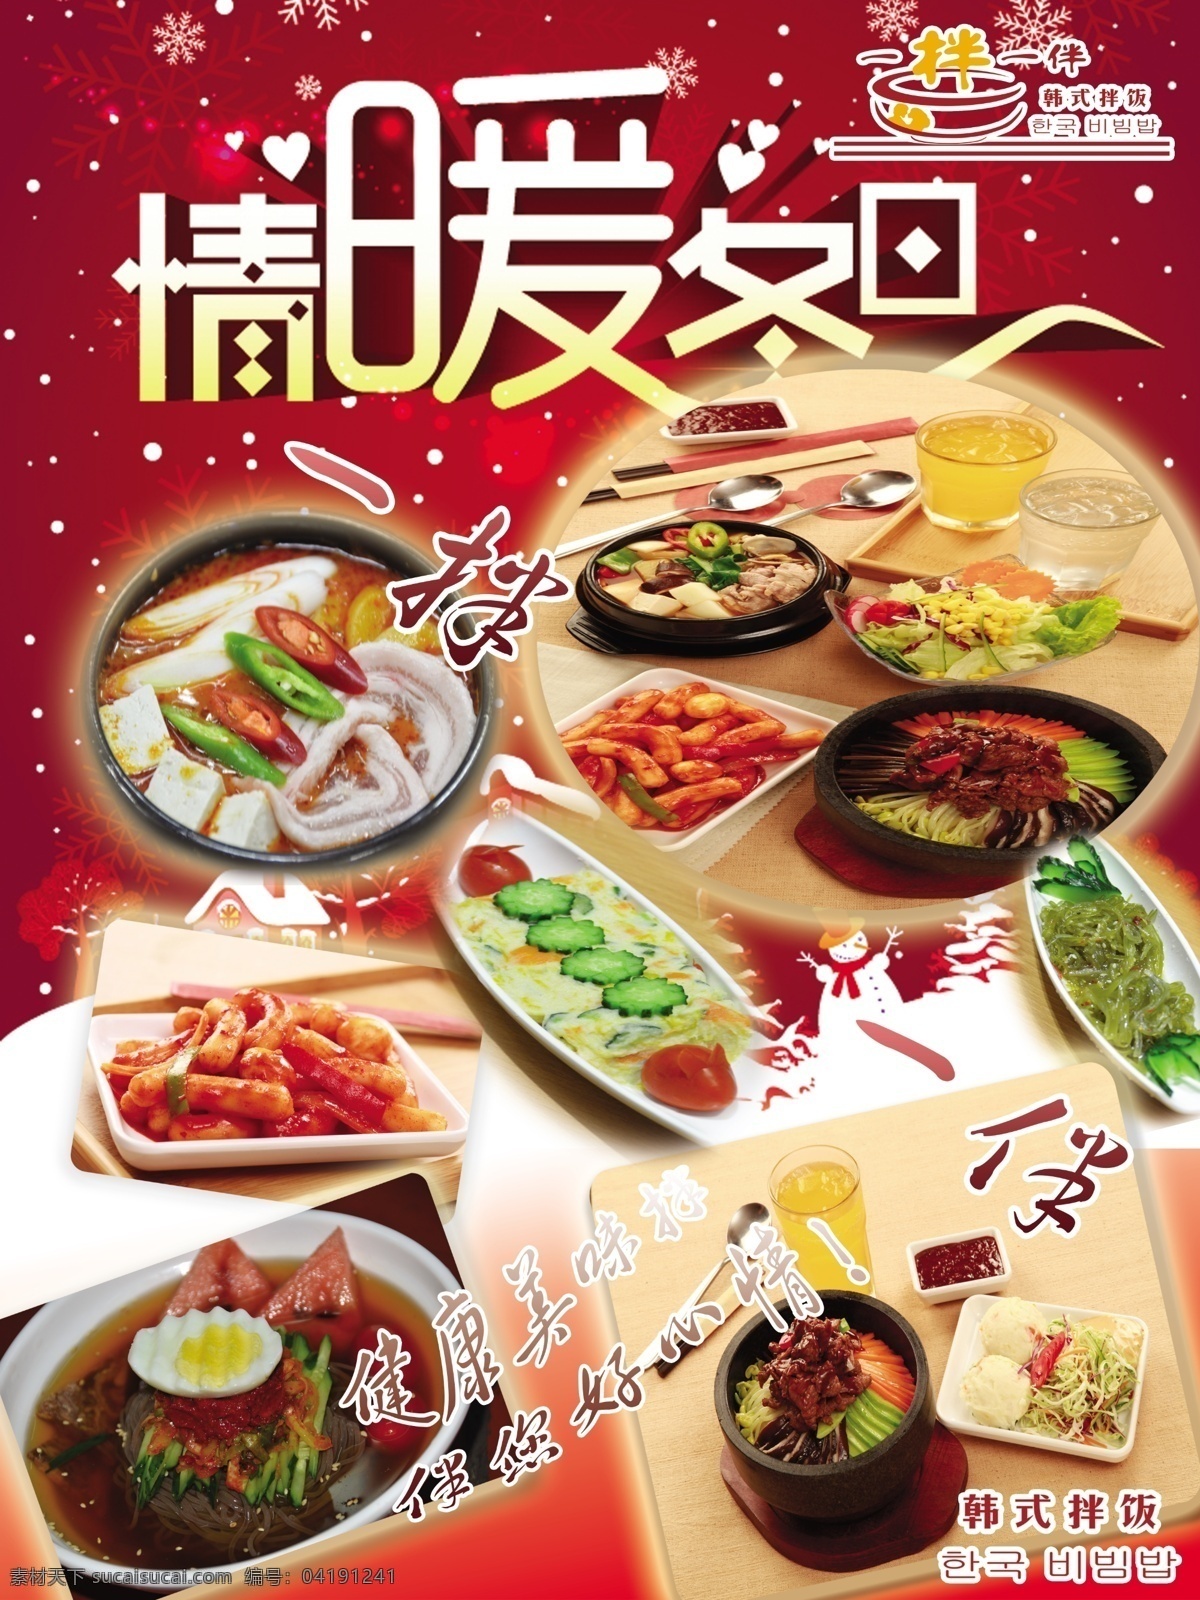 石锅拌饭 饭店海报 韩式拌饭 拌饭套餐 饭店宣传海报 分层 白色